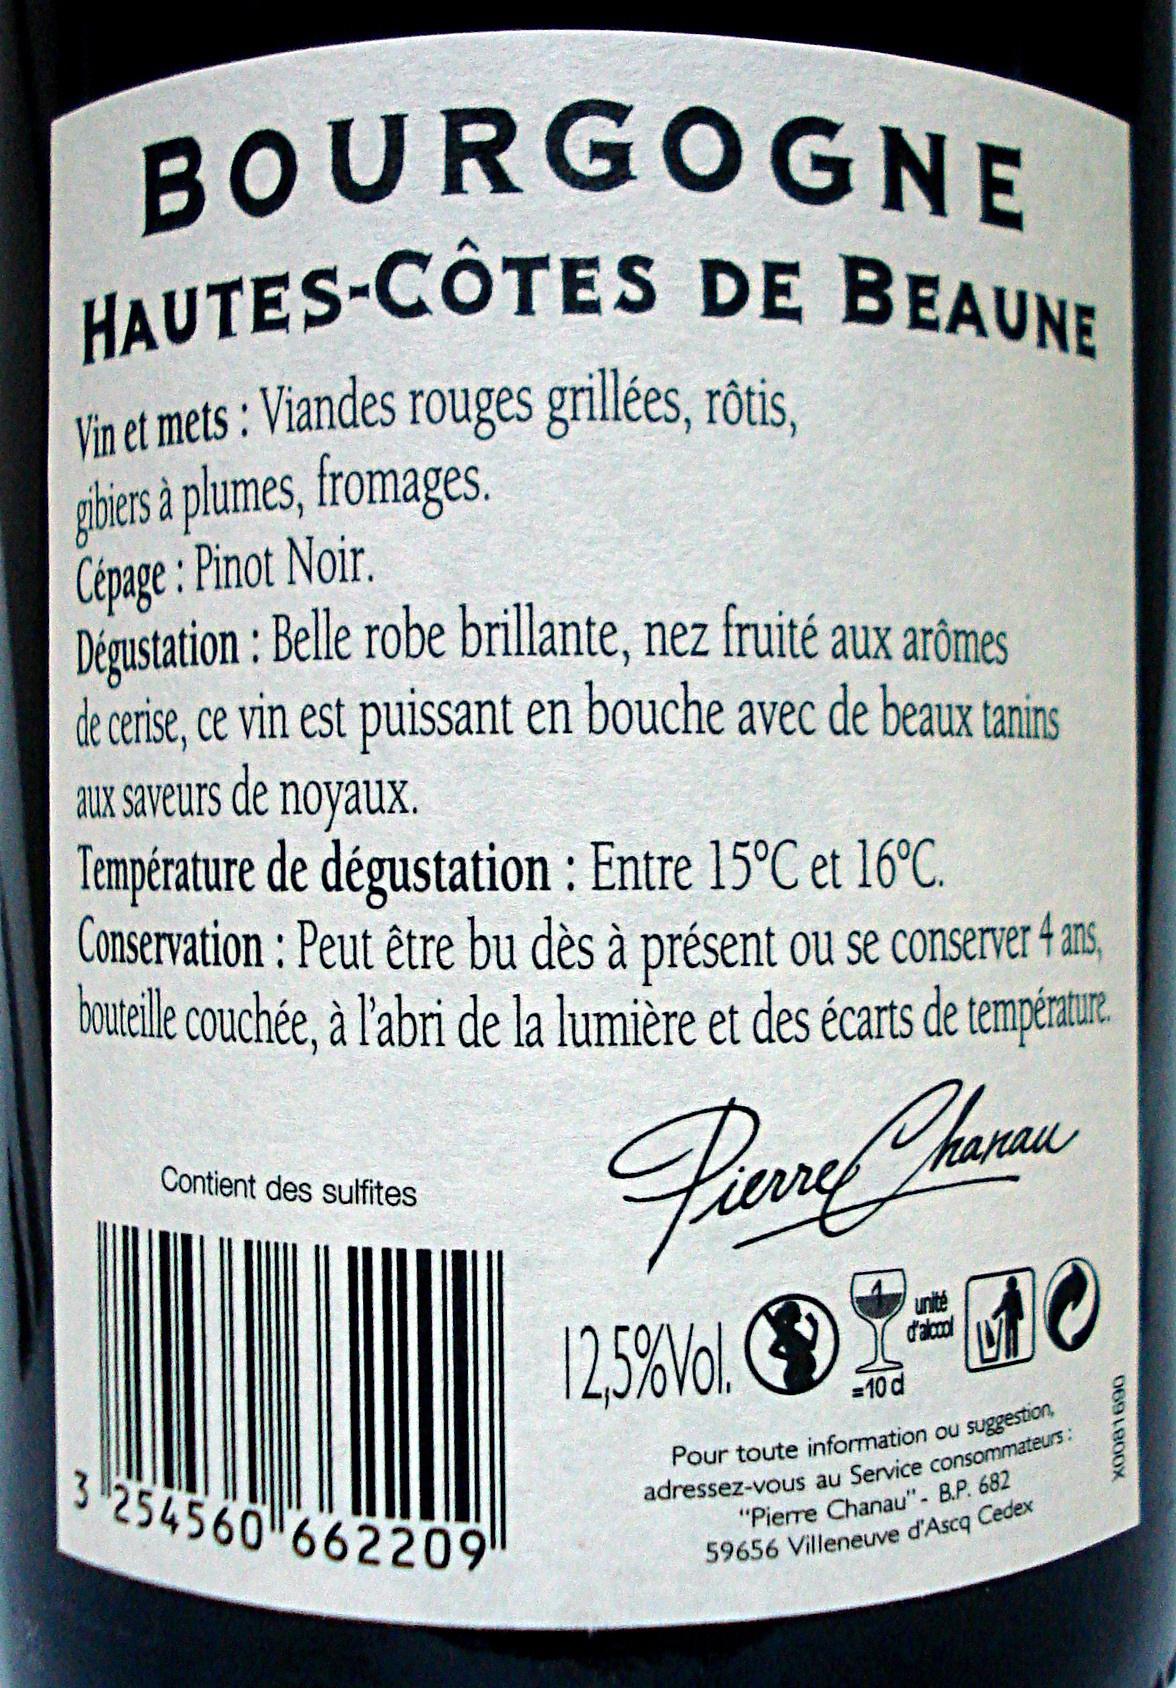 Bourgogne Hautes-Côtes de Beaune 2011 - Ingrédients